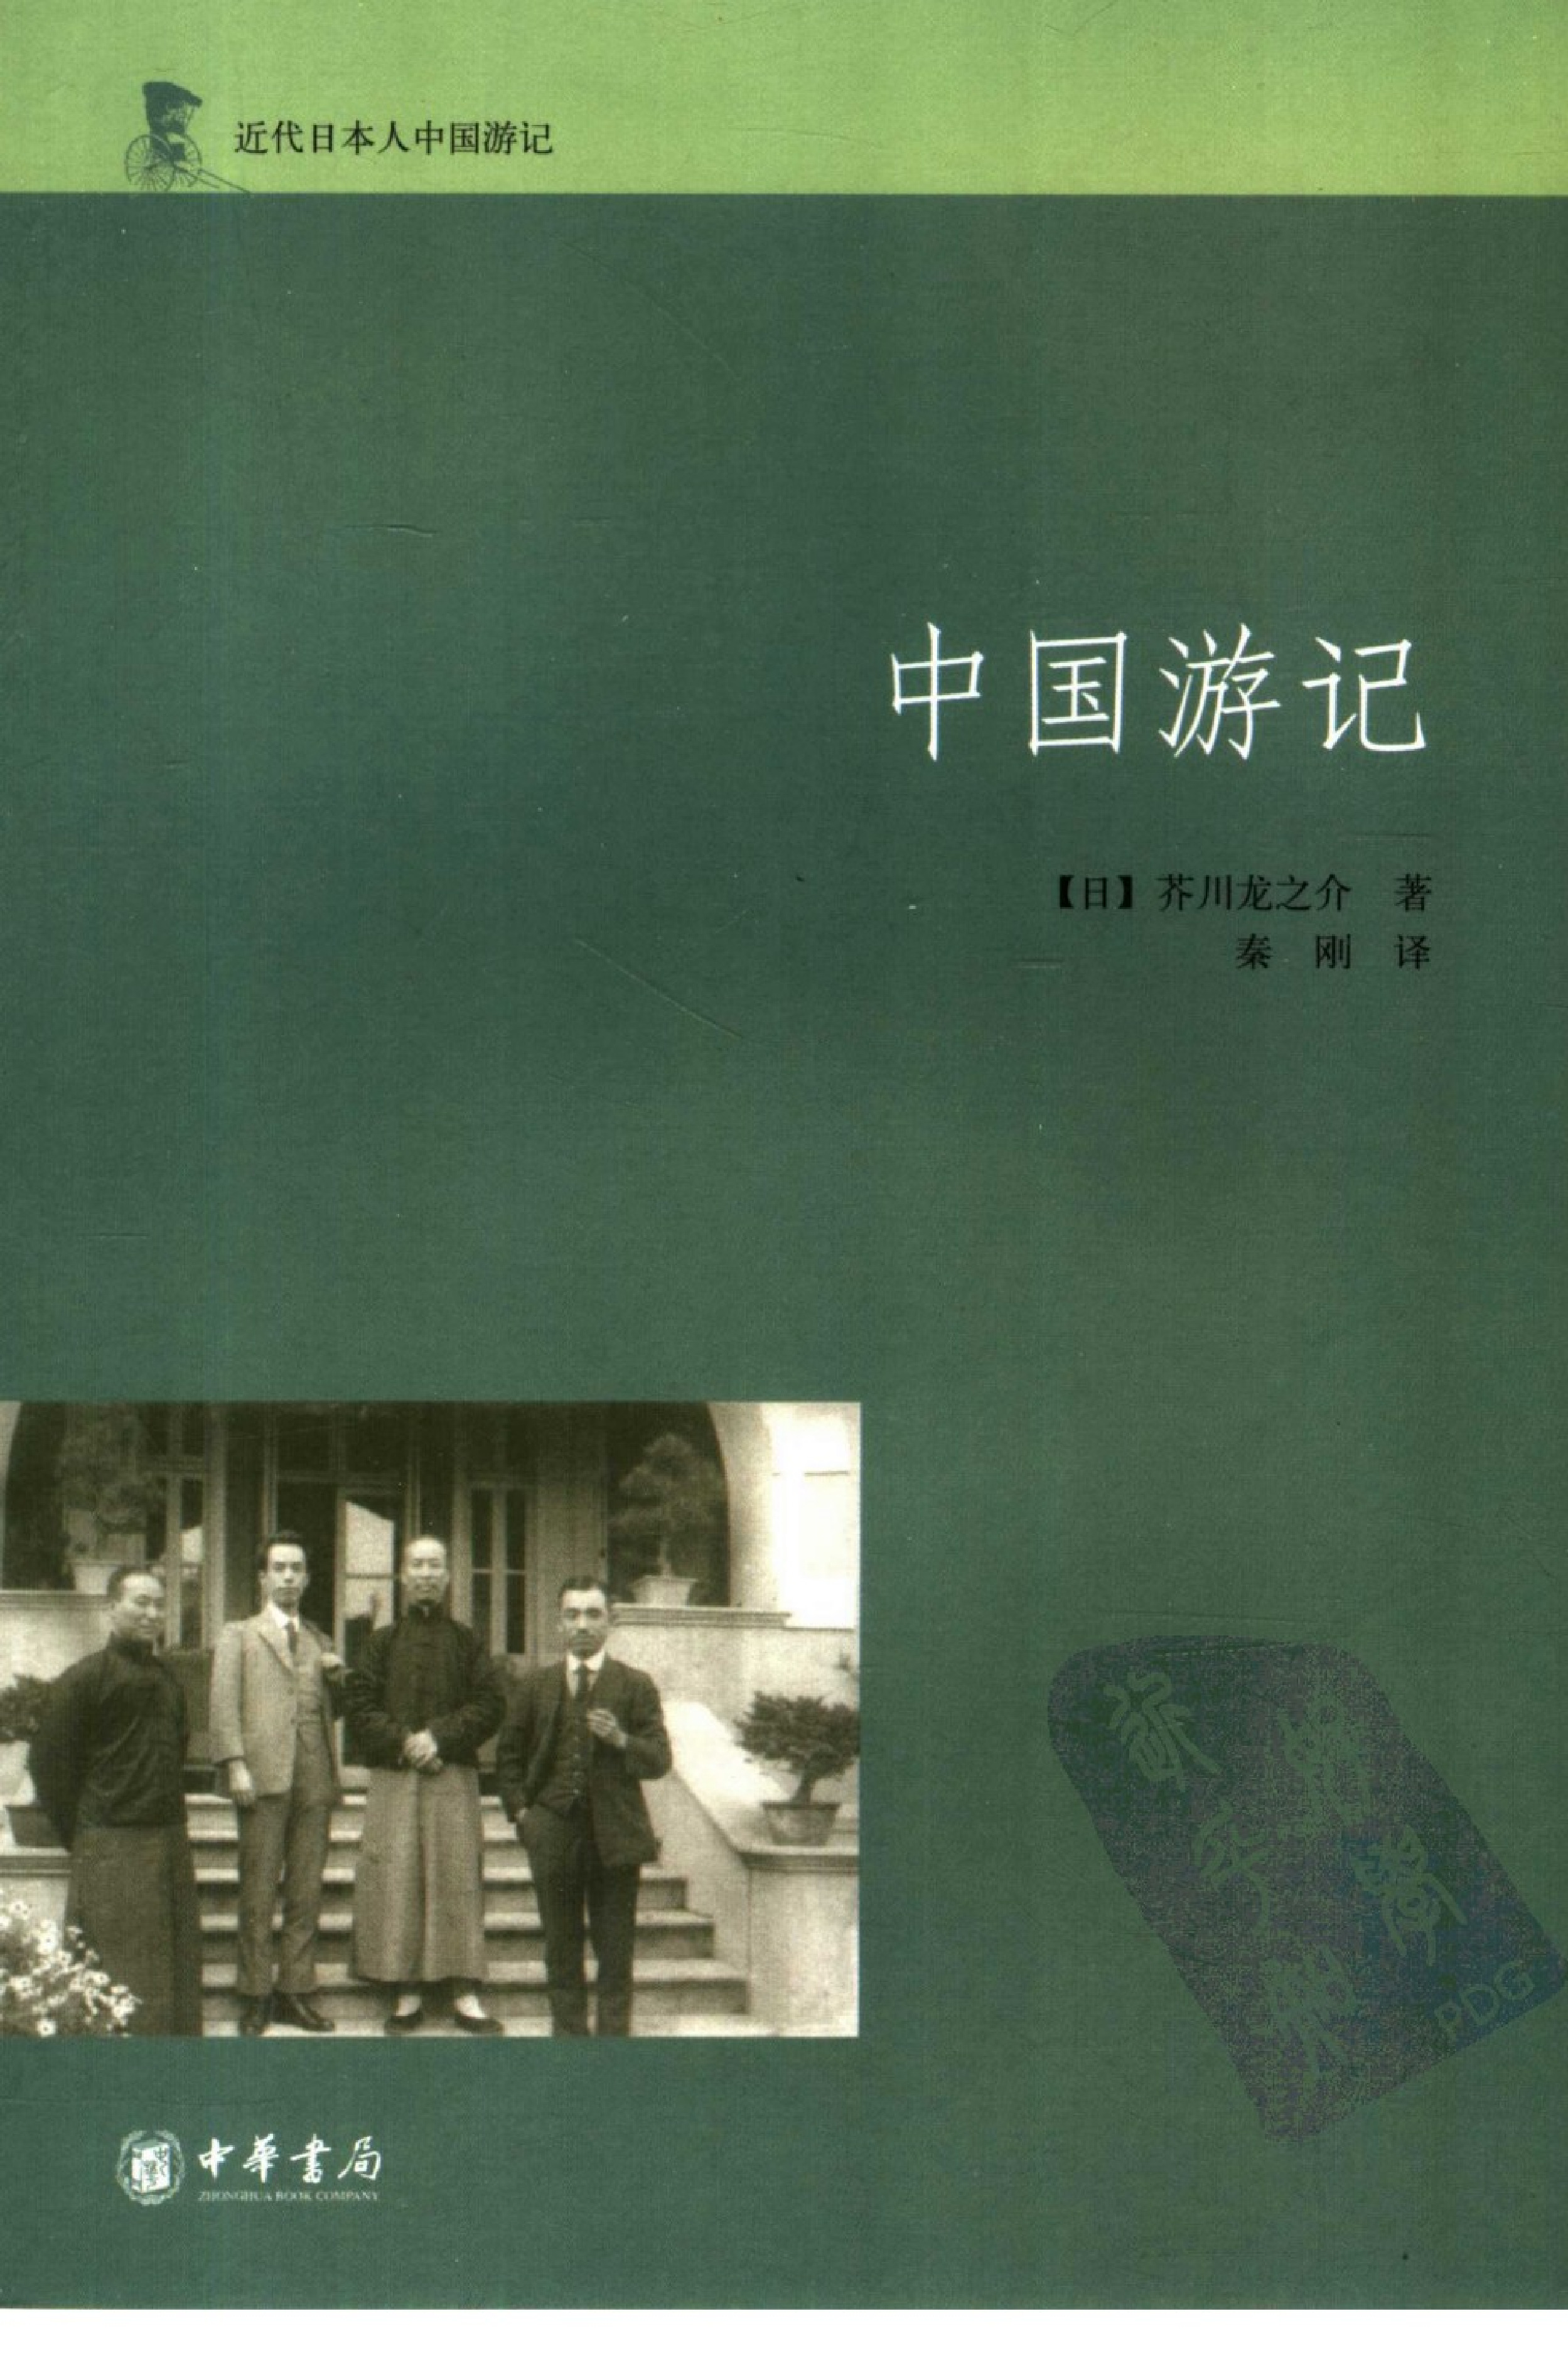 中国游记[日]芥川龙之介.秦刚译.中华书局(2007)